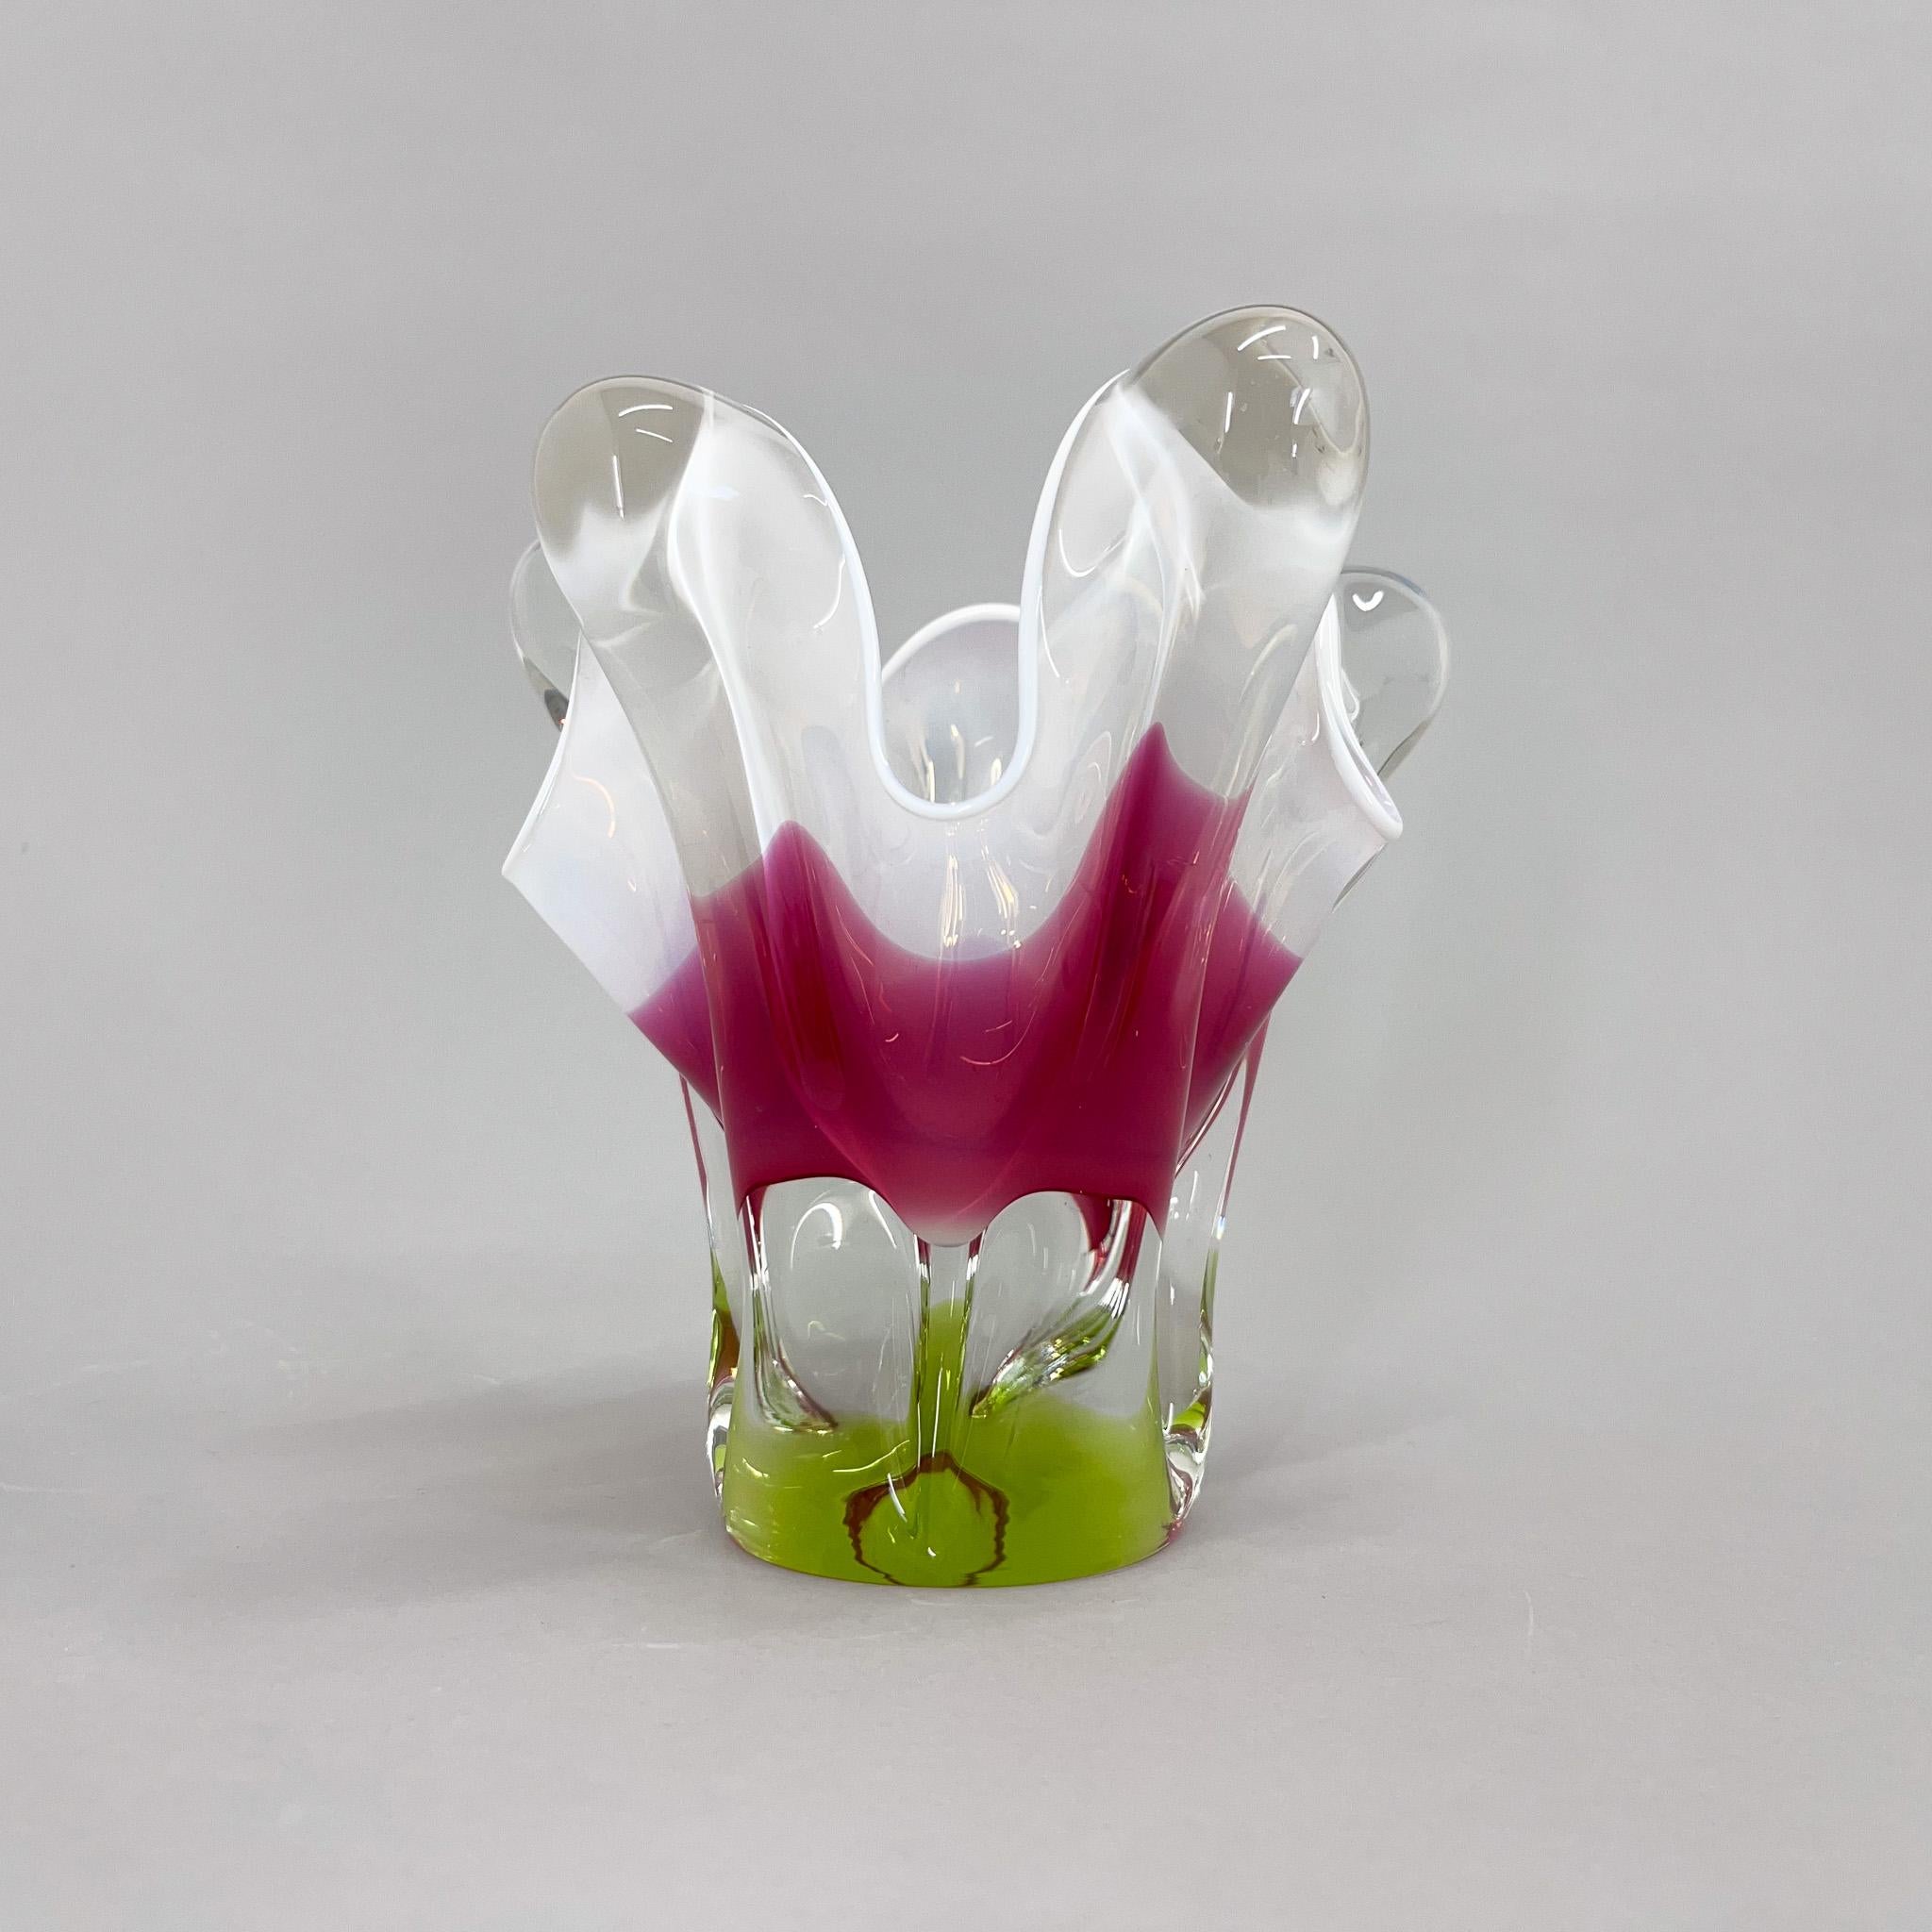 Vase sculptural en verre d'art tchèque, conçu par Josef Hospodka dans les années 1960 et fabriqué par la verrerie Chribska. Combinaison de verre rose, vert et transparent avec un joli bord blanc opaque. Très bon état vintage. 